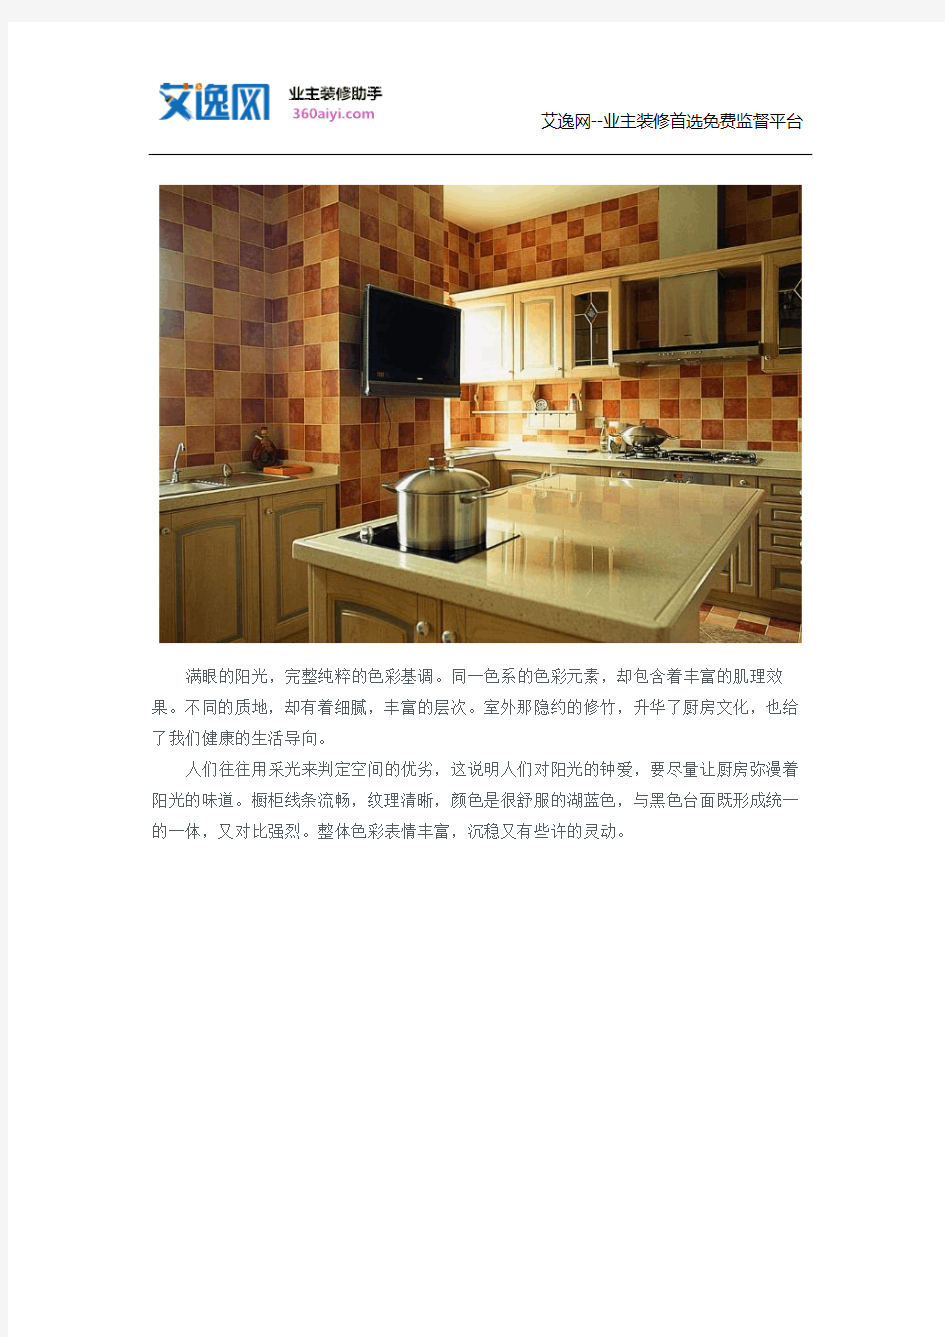 厨房瓷砖颜色搭配及价格